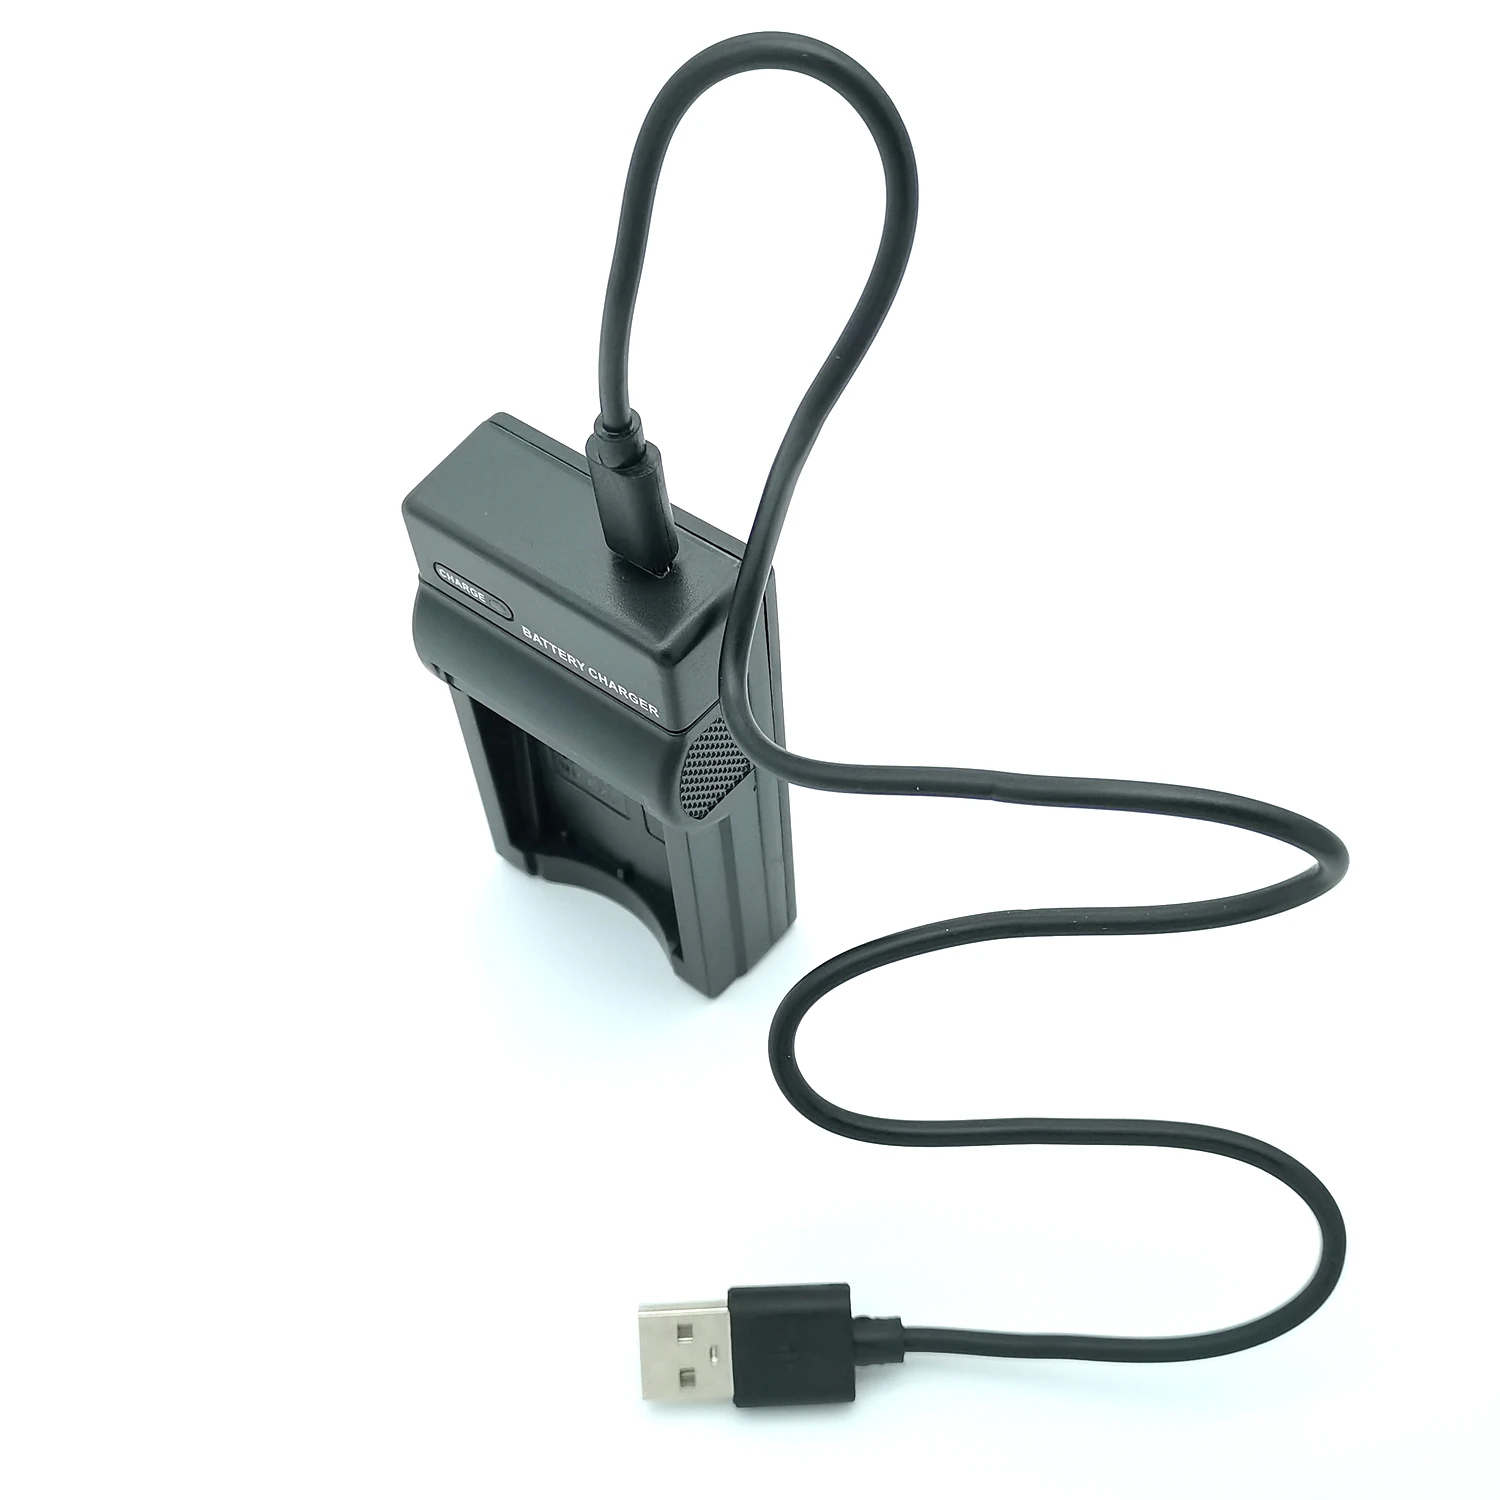 USB-Зарядное устройство для цифровой видеокамеры DXG DXG-535V, DXG-535VB, DXG-535VR, DXG-535VW